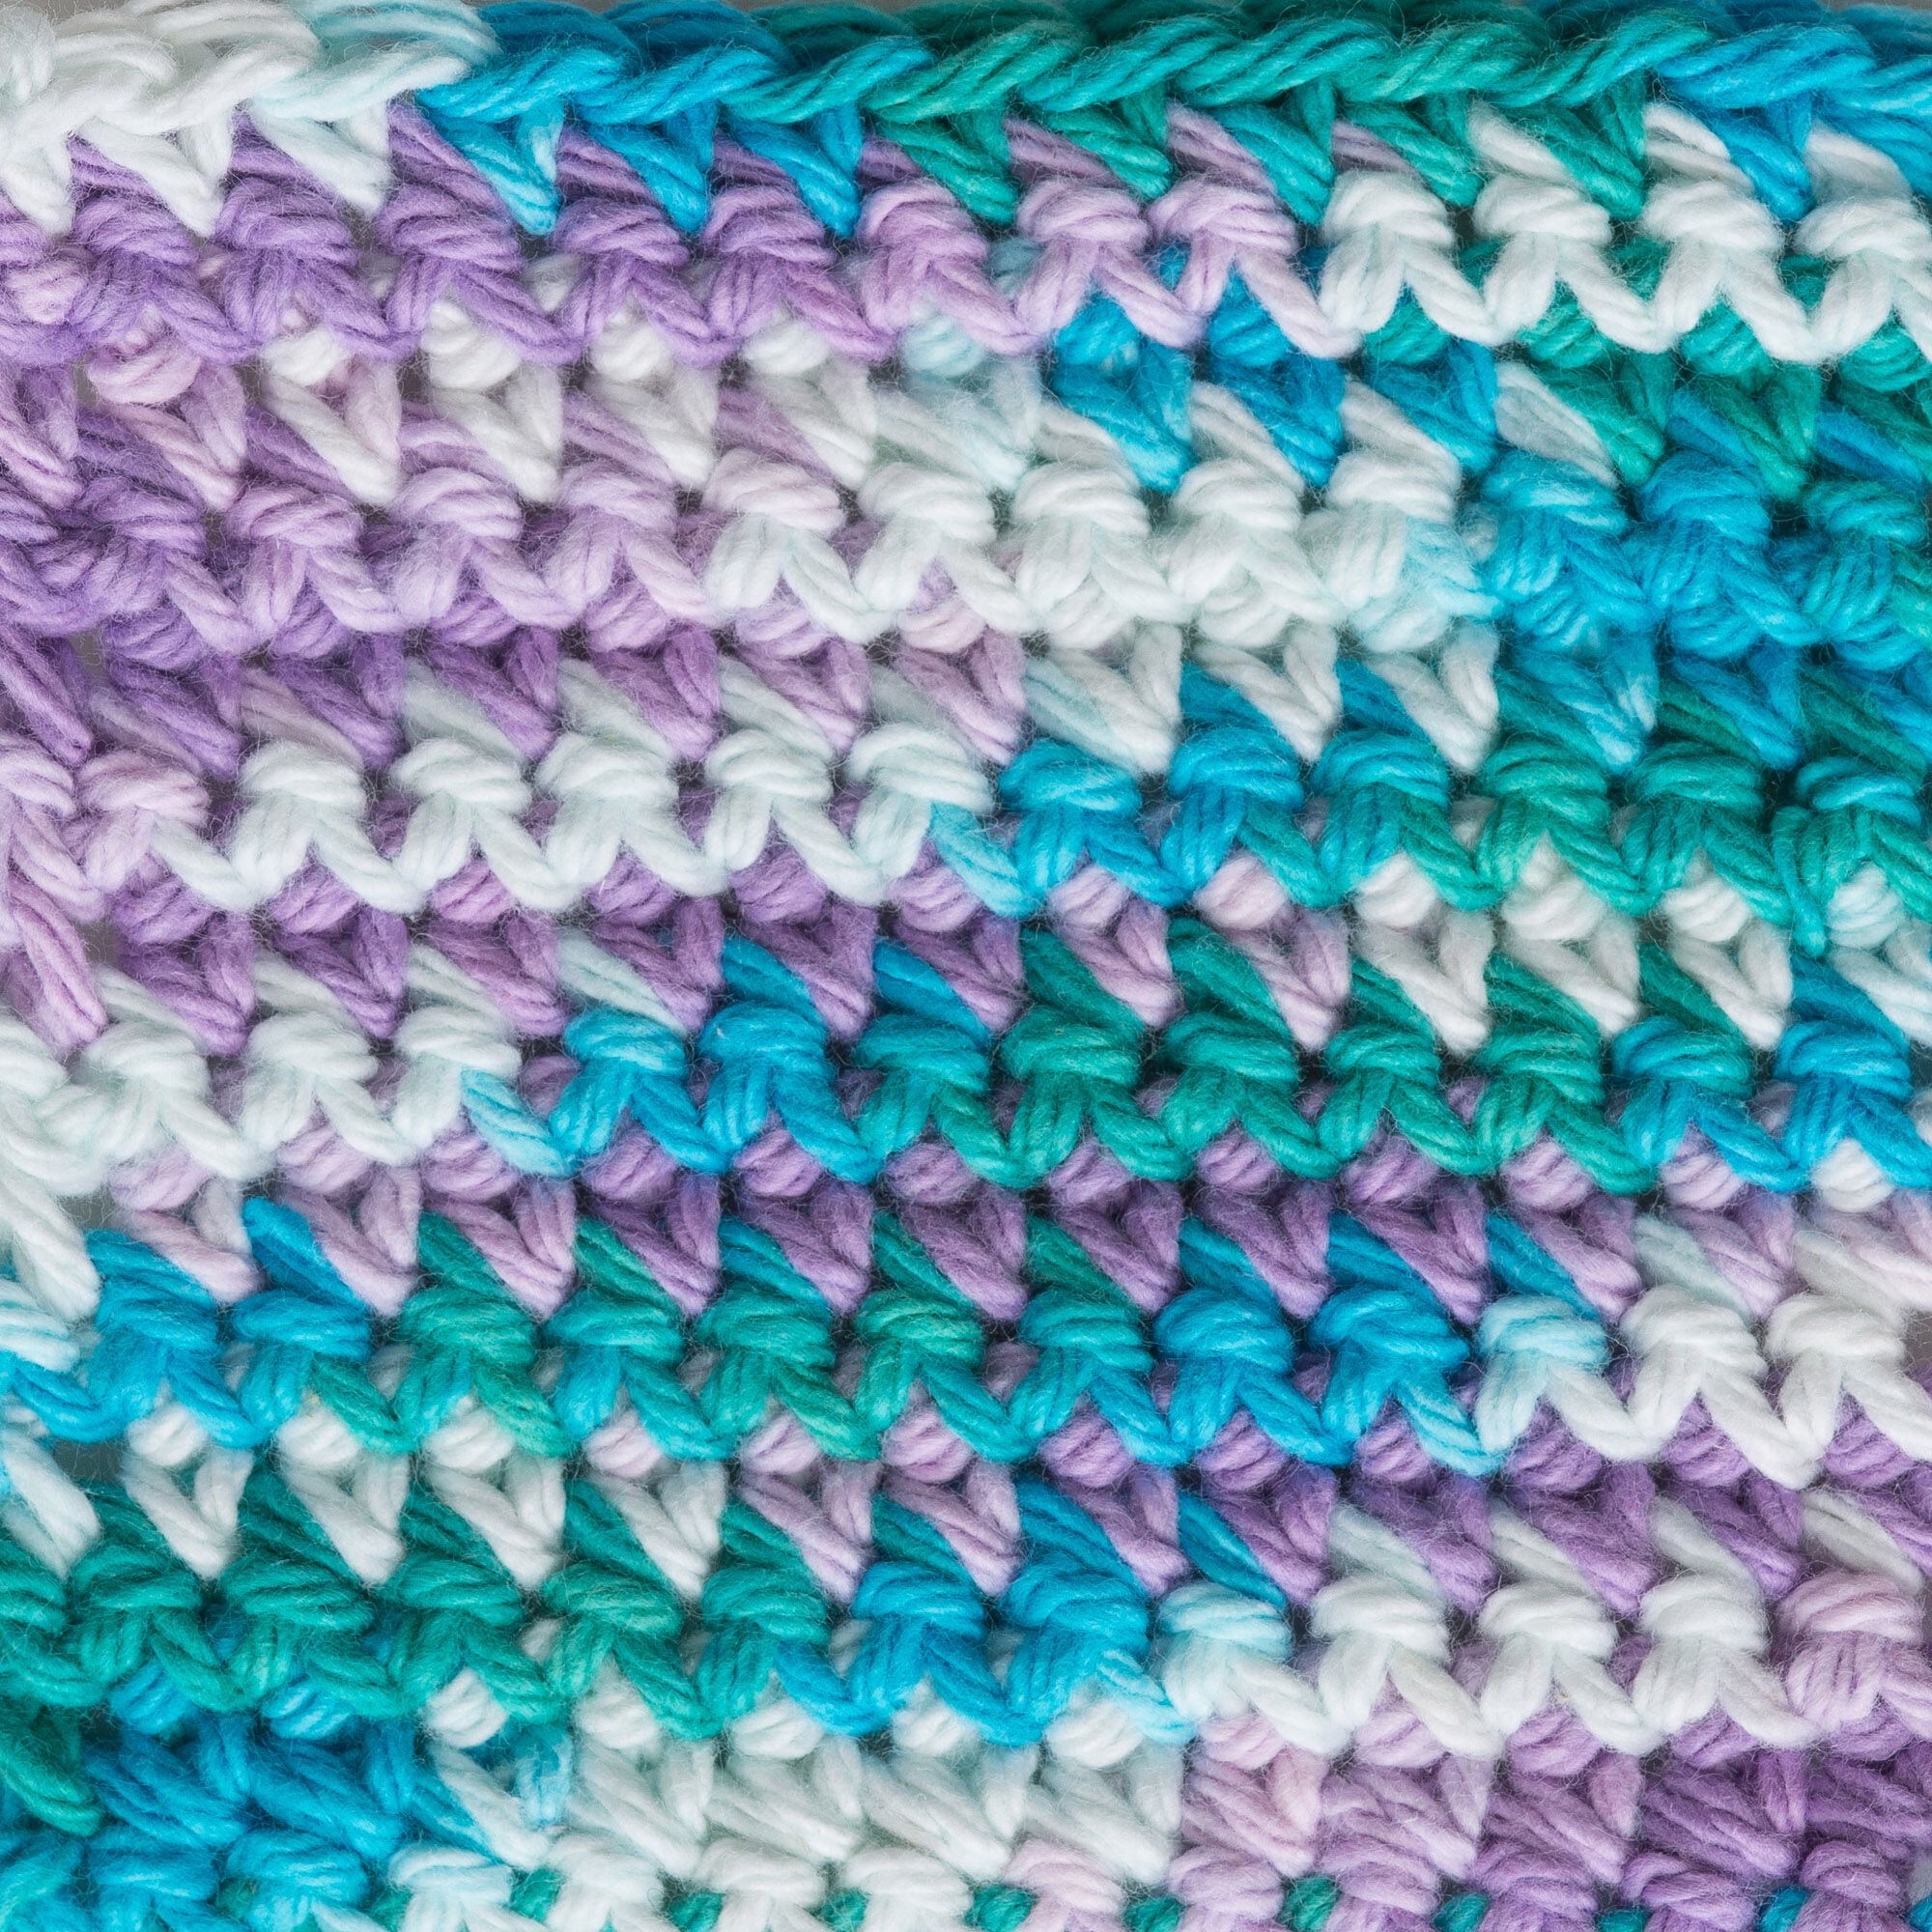 Lily Sugar 'n Cream Cotton Yarn Light Blue 00026 Crochet Knit Fast